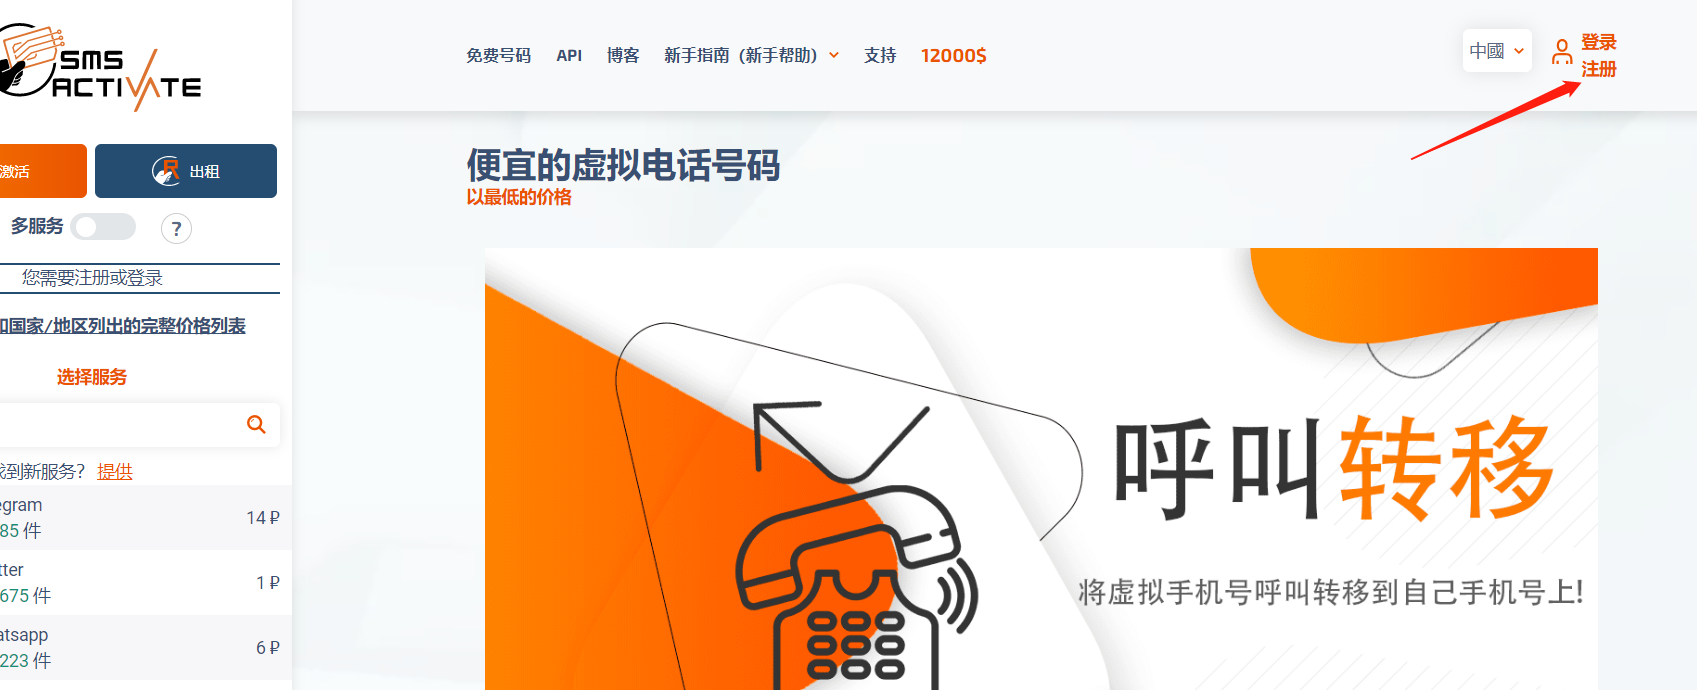 中国区1块钱注册OpenAI账号试用ChatGPT指南-程序员阿鑫-带你一起秃头-第1张图片